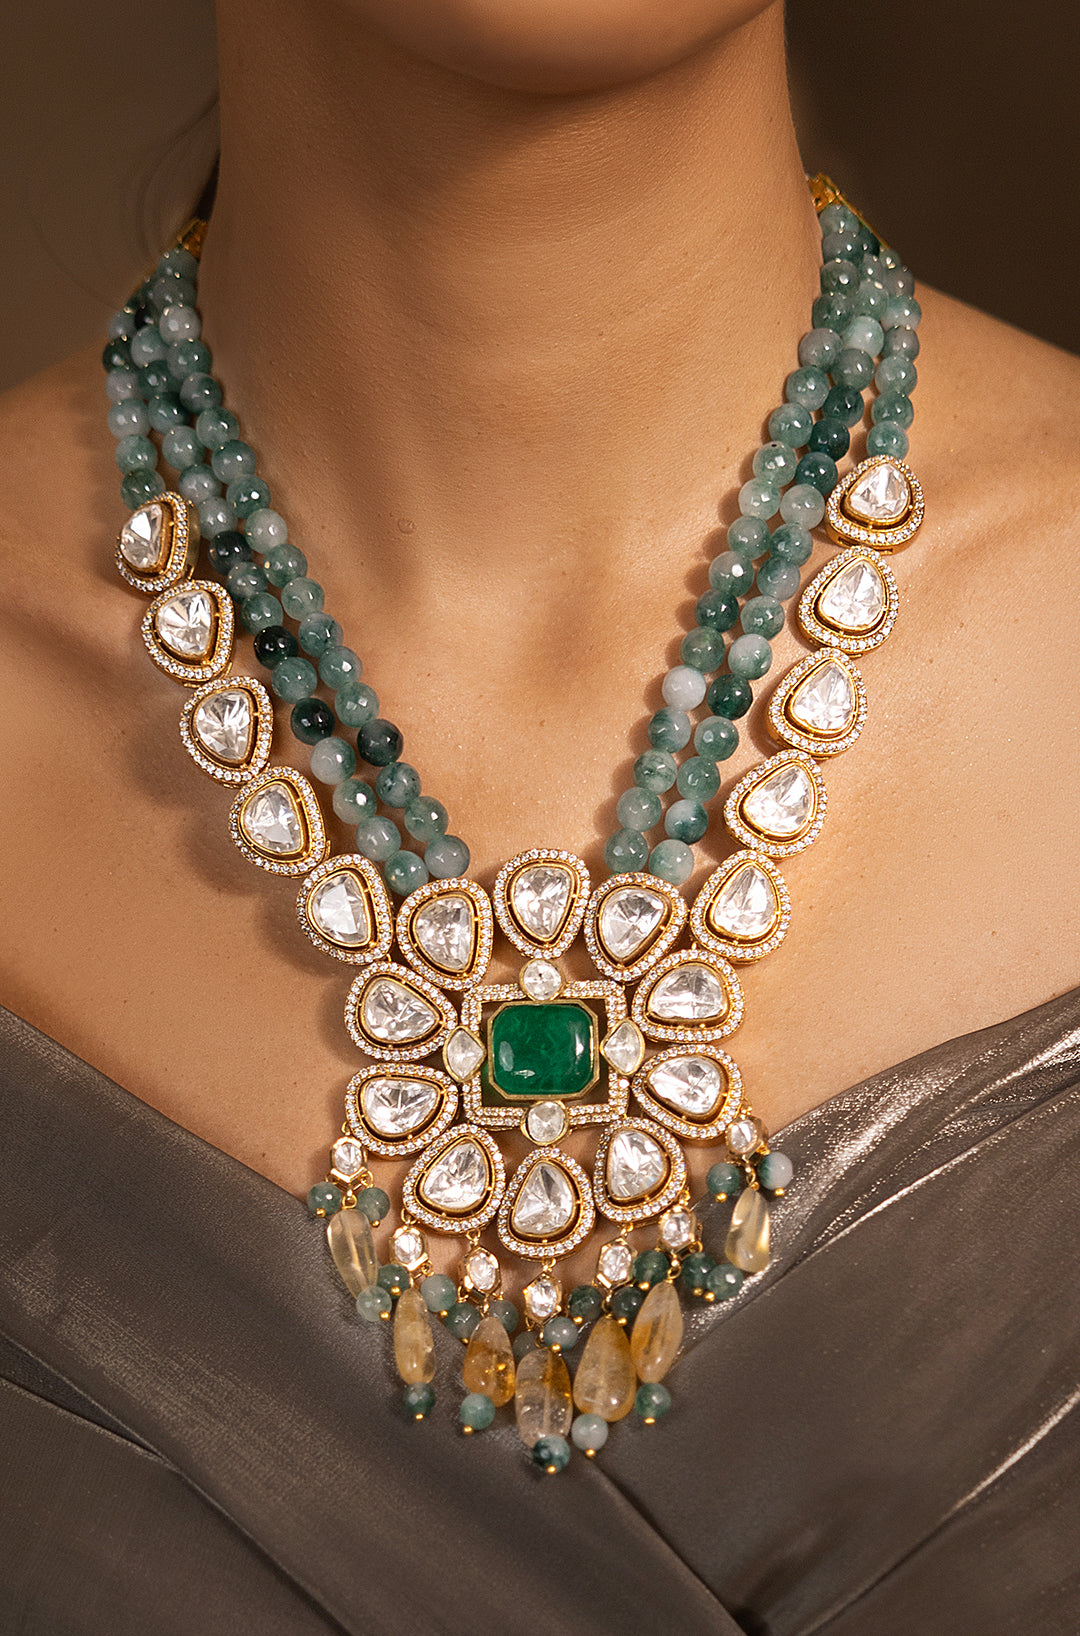 Luxurious Golden-Green Necklace